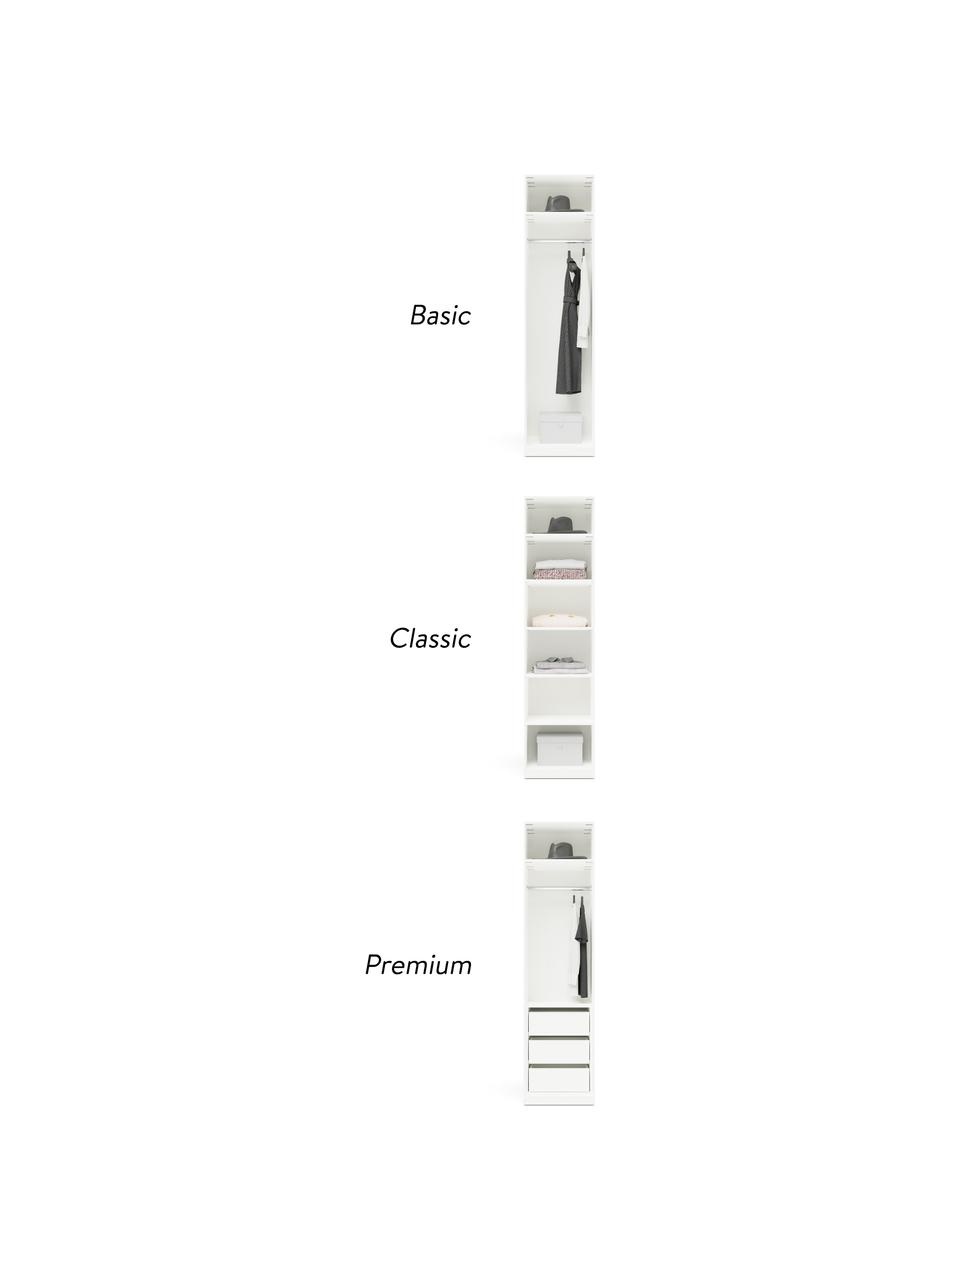 Modulaire draaideurkast Leon in wit, 50 cm breed, meerdere varianten, Frame: met melamine beklede spaa, Wit, Basis interieur, hoogte 200 cm